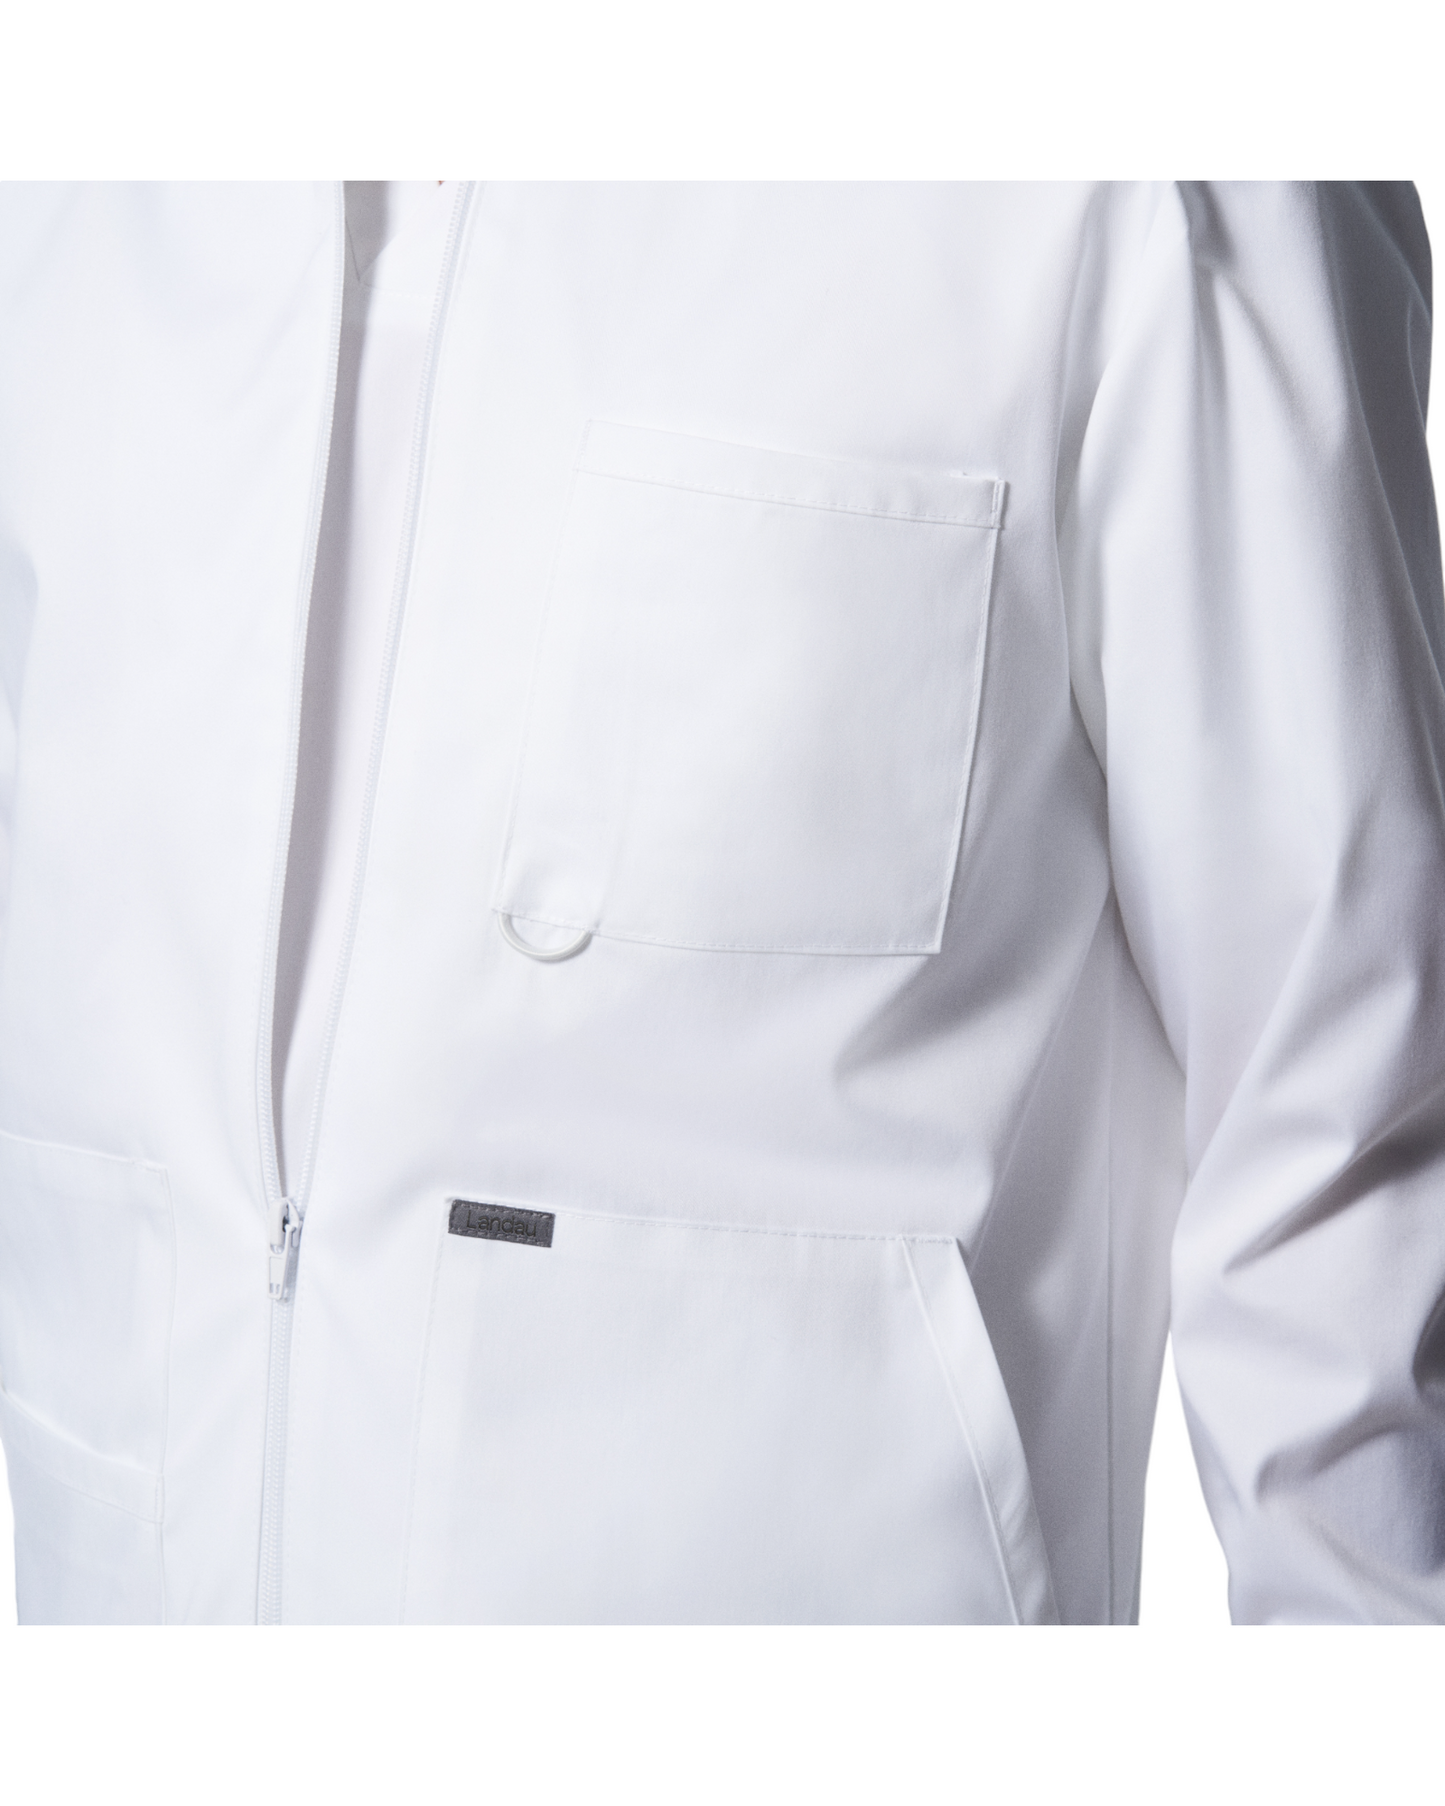 Vue de la poche poitrine de la veste de survêtement pour hommes Landau Proflex #LJ702 .